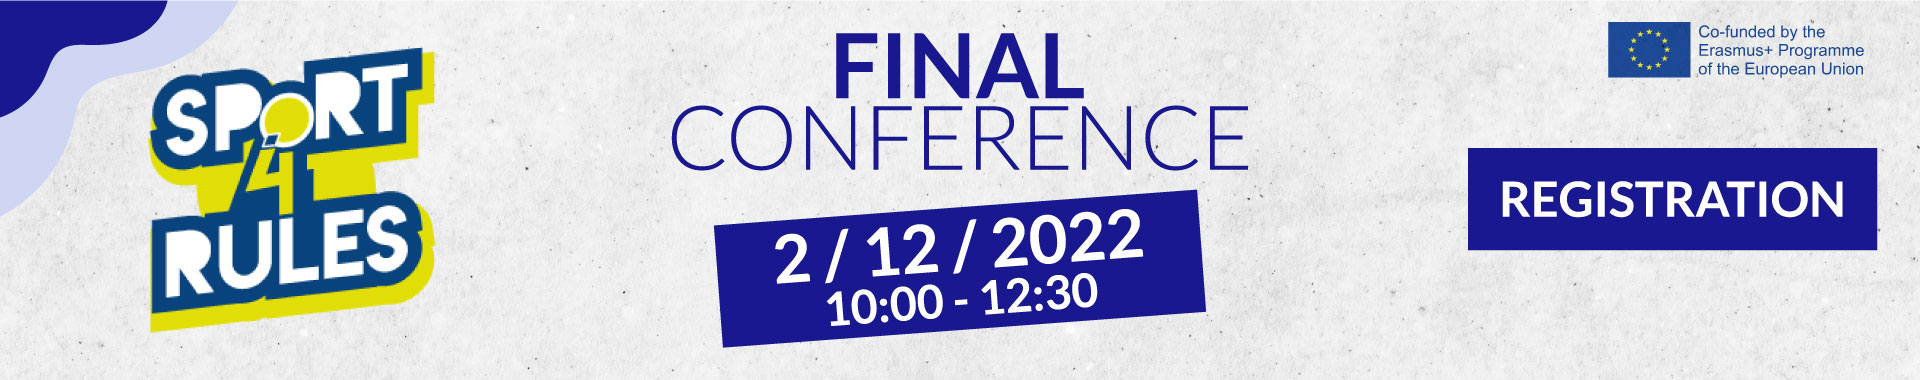 Registration for Final Conference